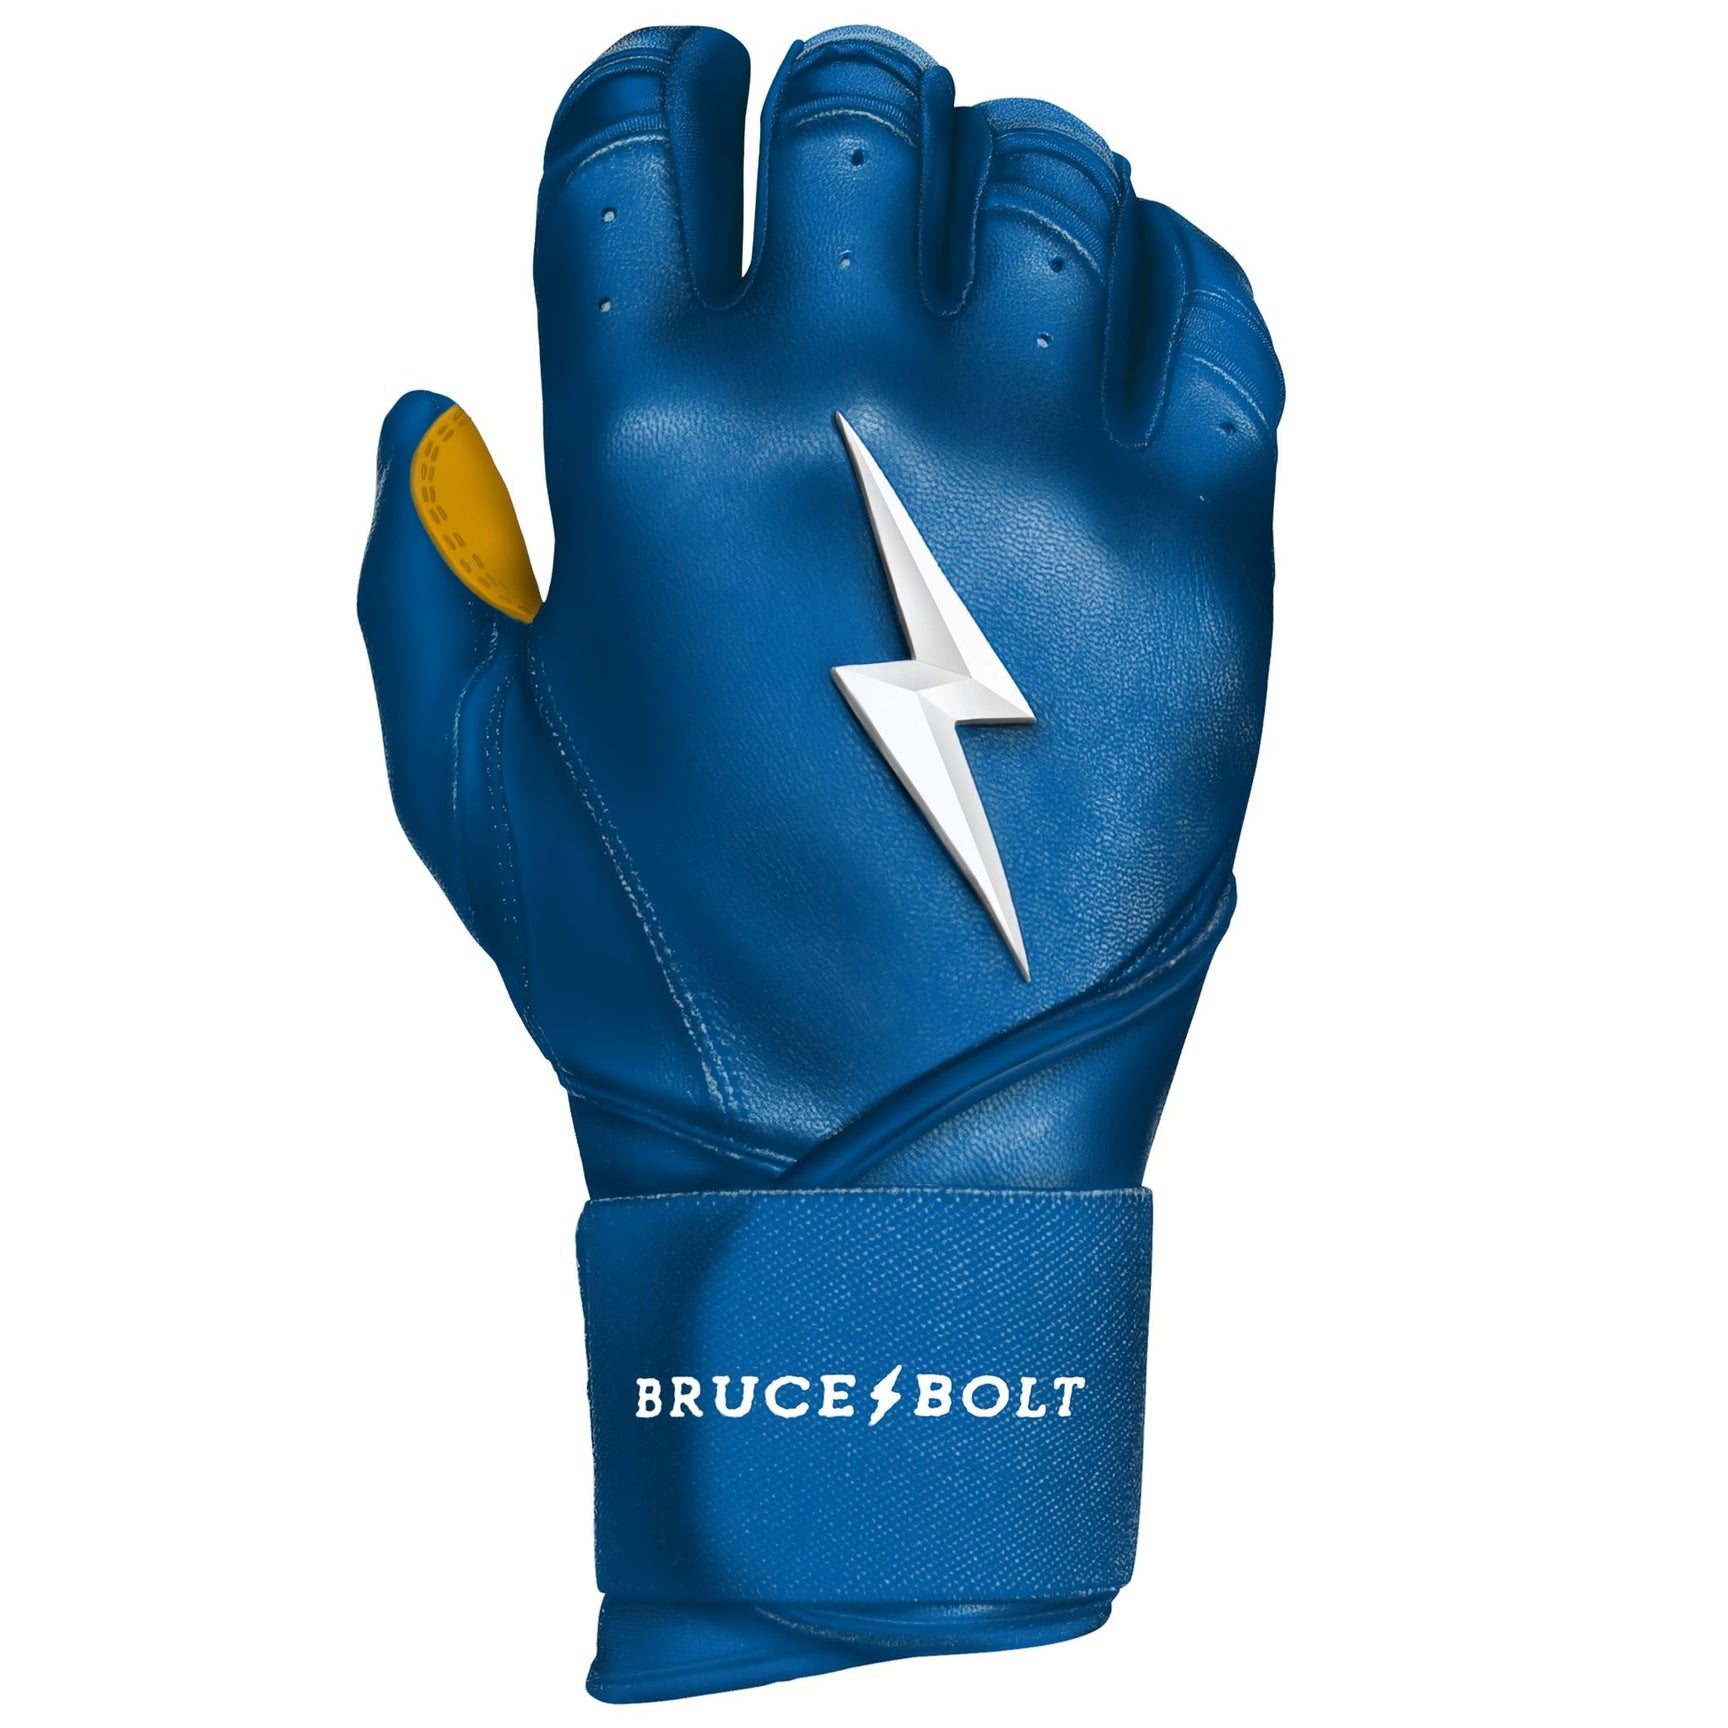 Premium Pro Bader Series Short Cuff Batting Gloves | Baby Blue, Medium